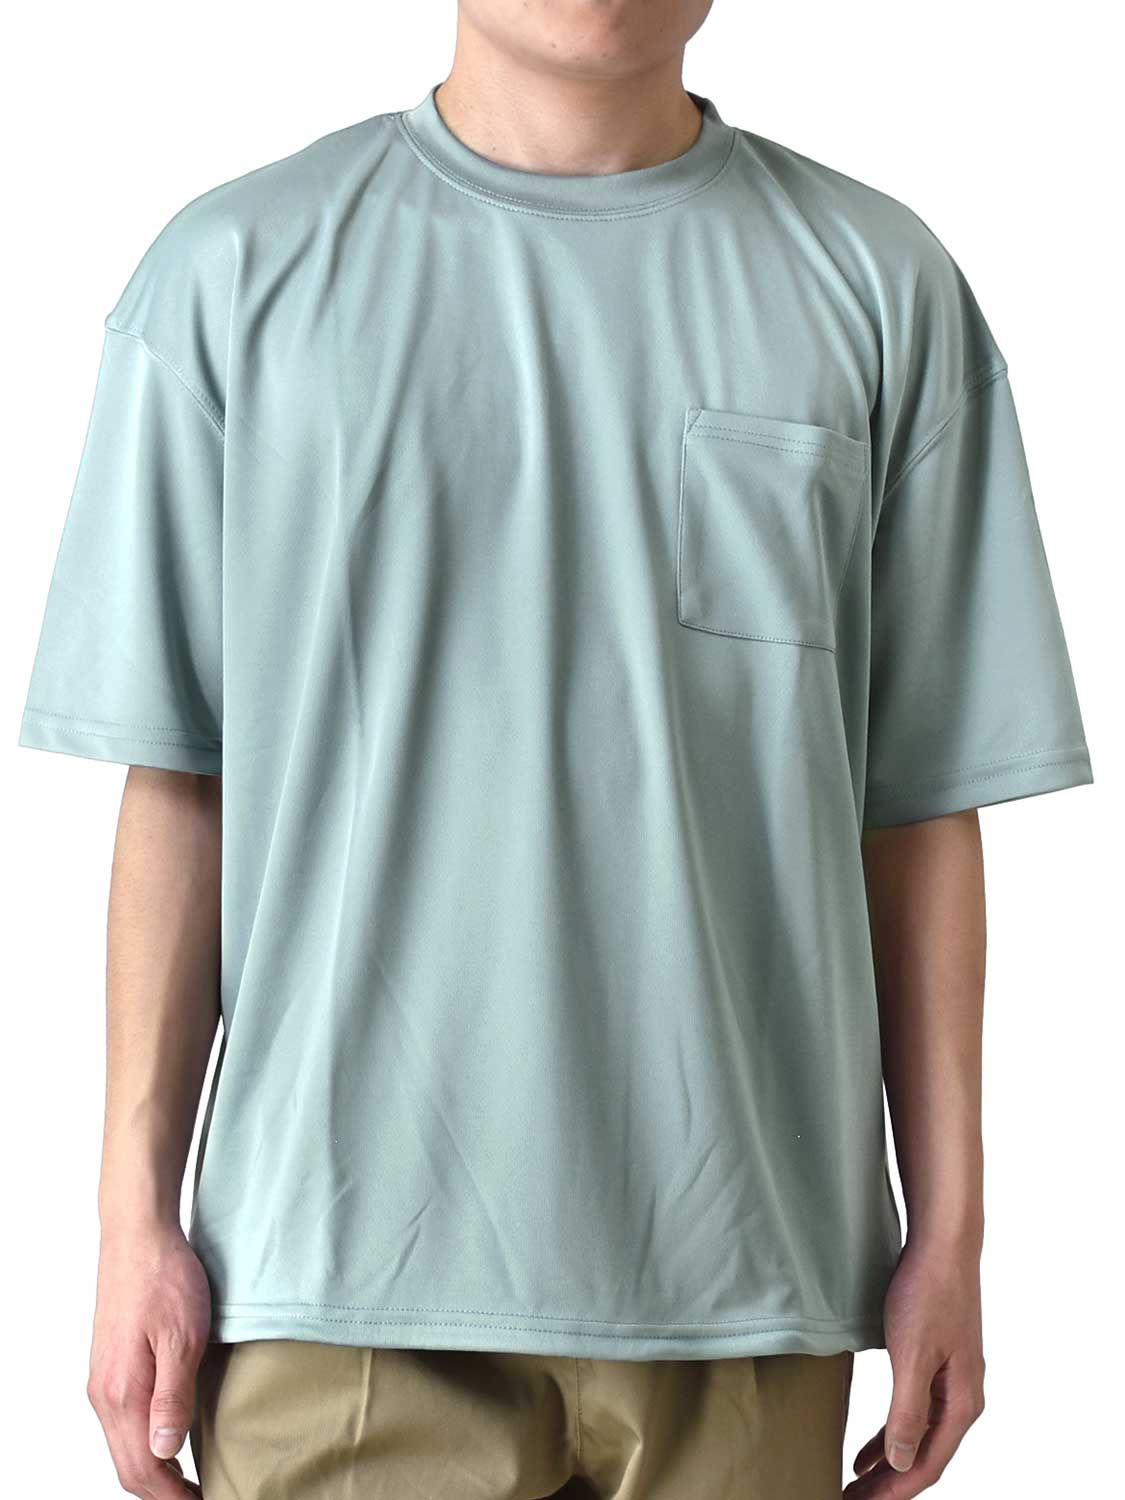 DRYストレッチ Tシャツ メンズ 吸汗速乾 くすみカラー ワイドシルエット ポケット付き 送料無料...